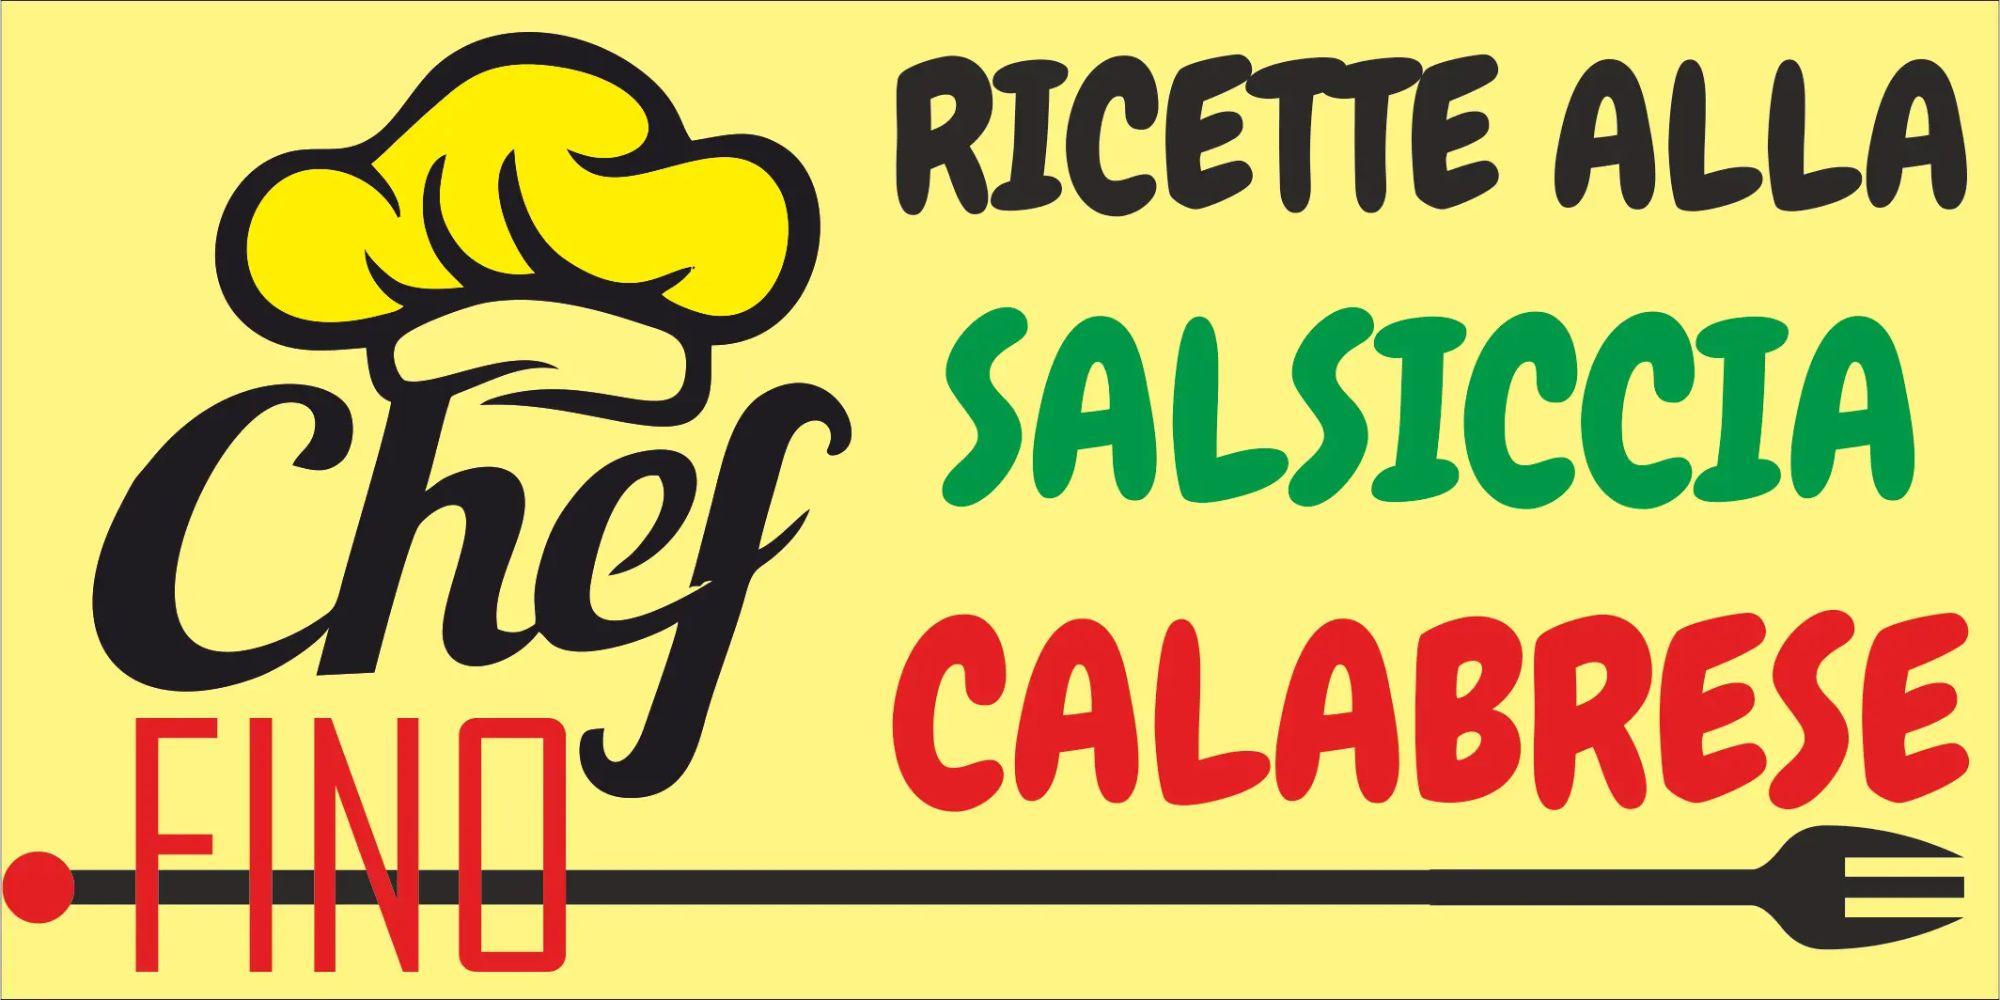 RICETTE CON SALSICCIA CALABRESE FINO